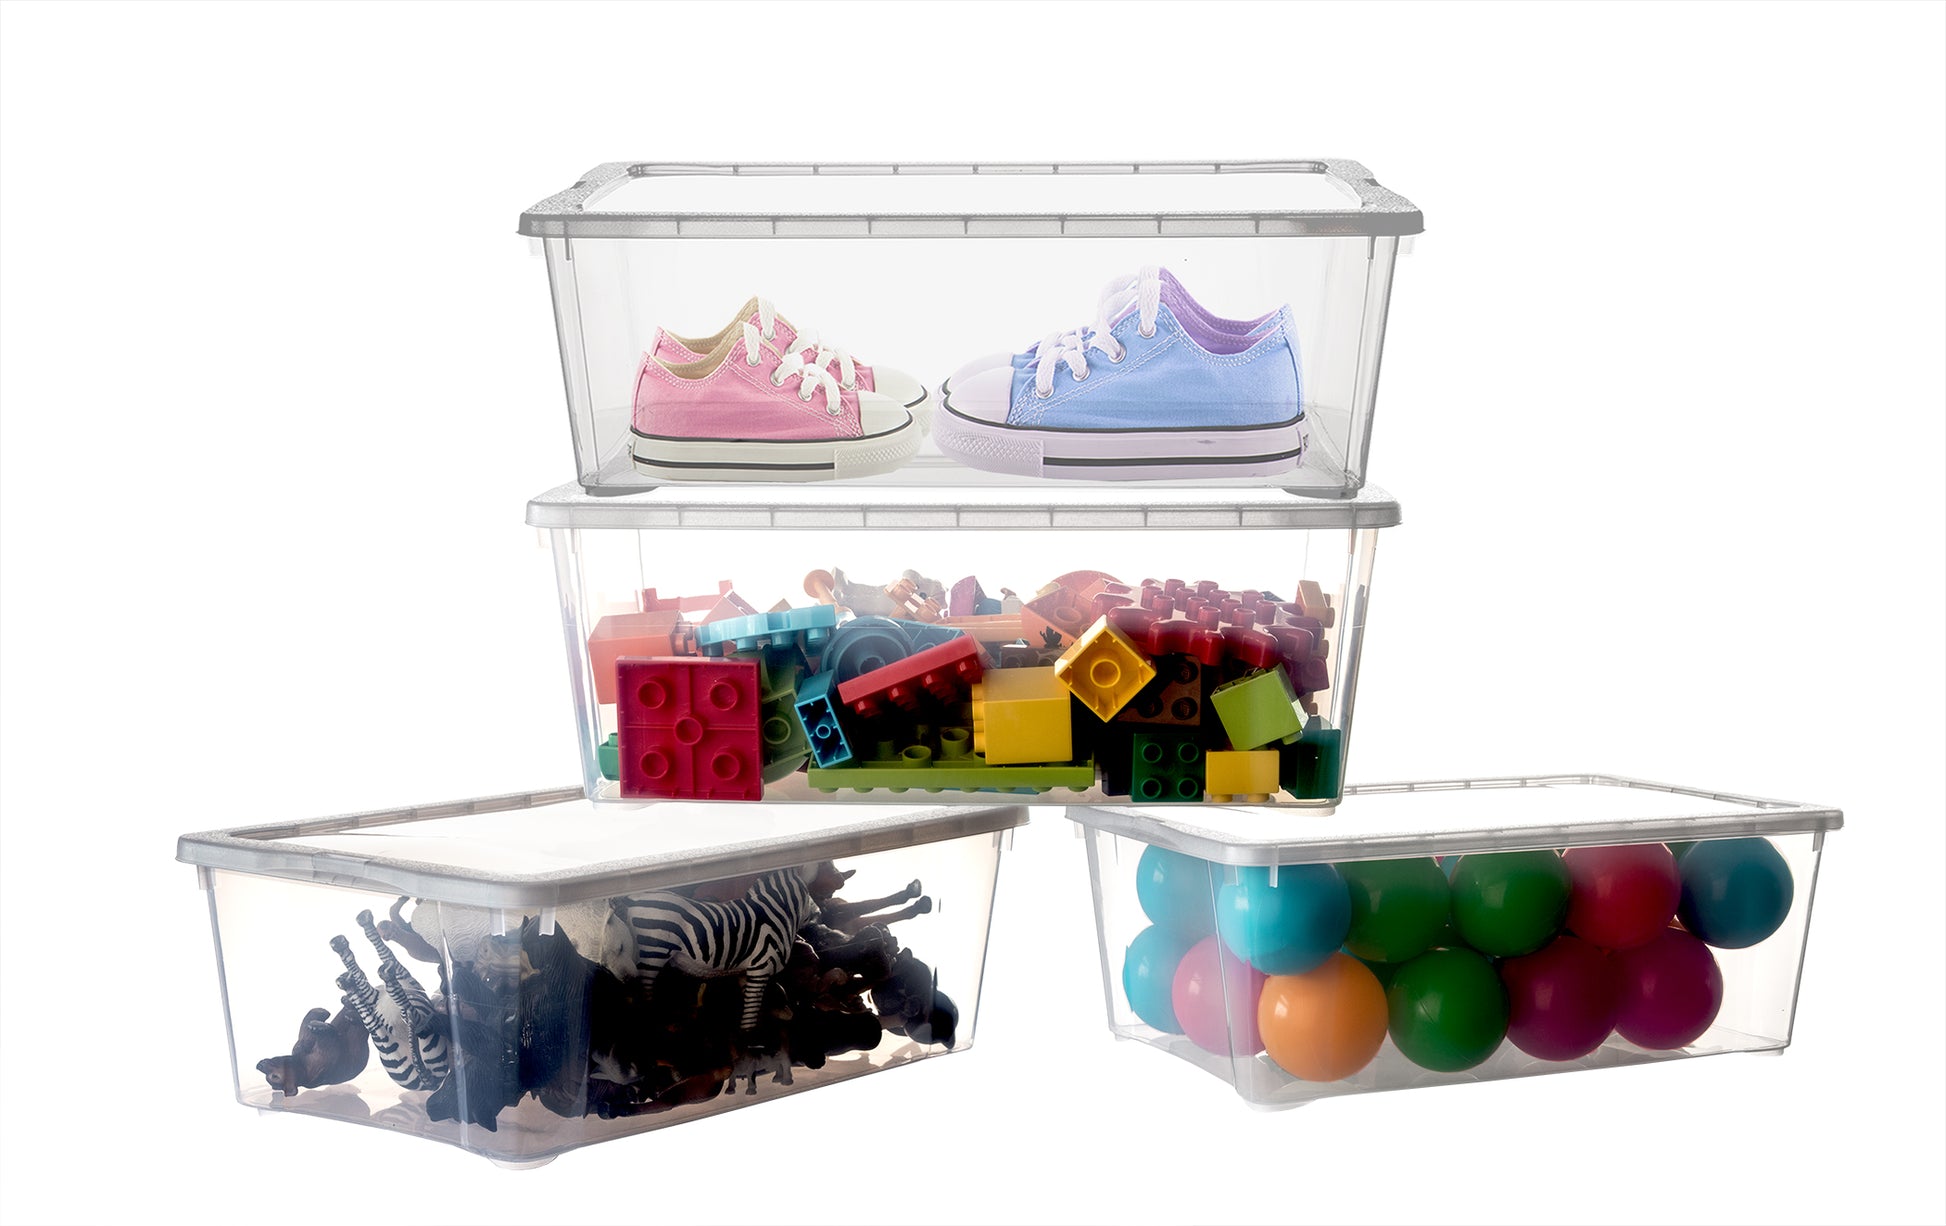 BigDean 12er Set Aufbewahrungsboxen mit Deckel 5L - belüftete & stapelbare Klarsichtboxen transparent - aus PP-Kunststoff - Organizer Box Aufbewahrung Ordnungsbox Schuhboxen 33x20x11cm 2